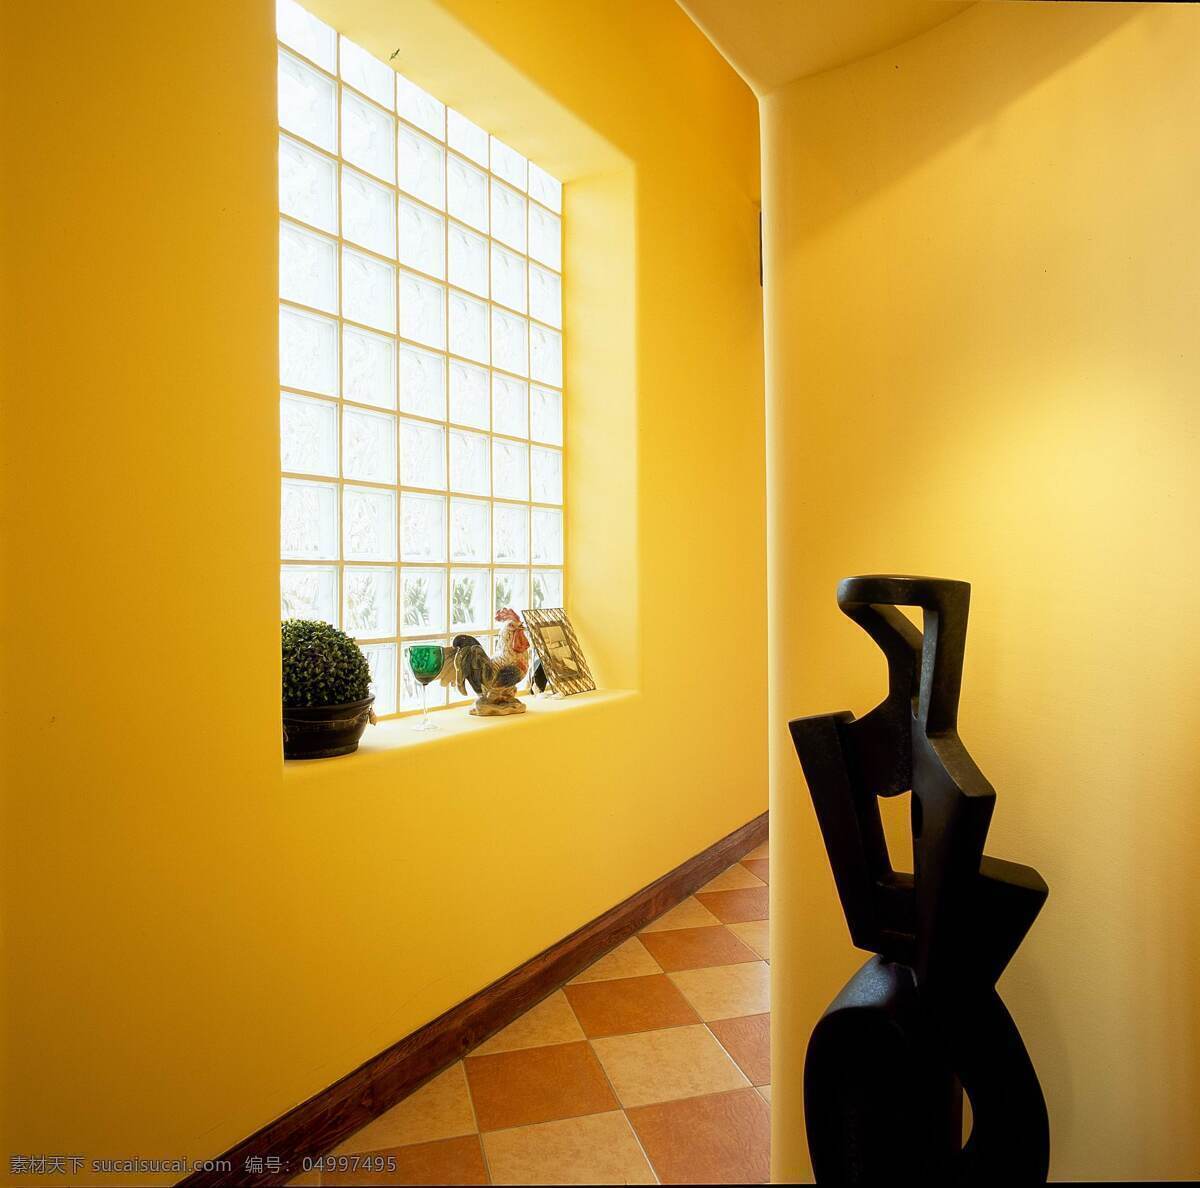 田园 地中海 走廊 窗户 装修 效果图 过道 浅黄色墙壁 白色灯光 方块 浅黄色 地板砖